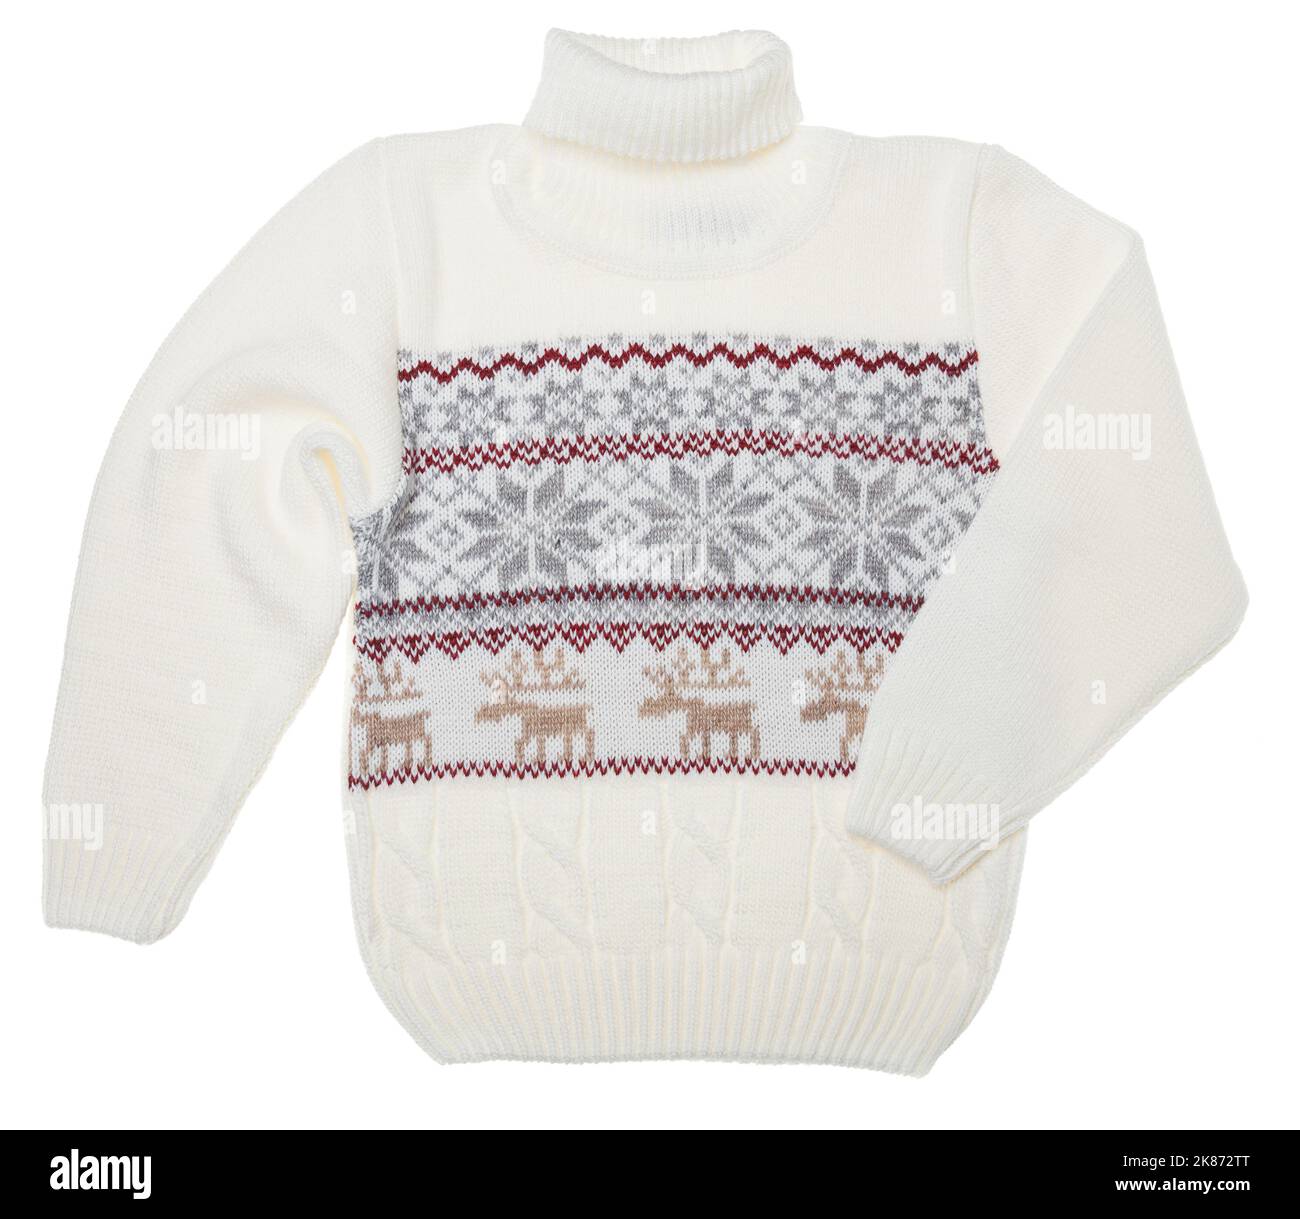 Maglione bianco per bambini con dolcevita natalizio caldo (noto anche come maglione Ugly) con ornamento nordico lavorato a maglia su sfondo bianco Foto Stock